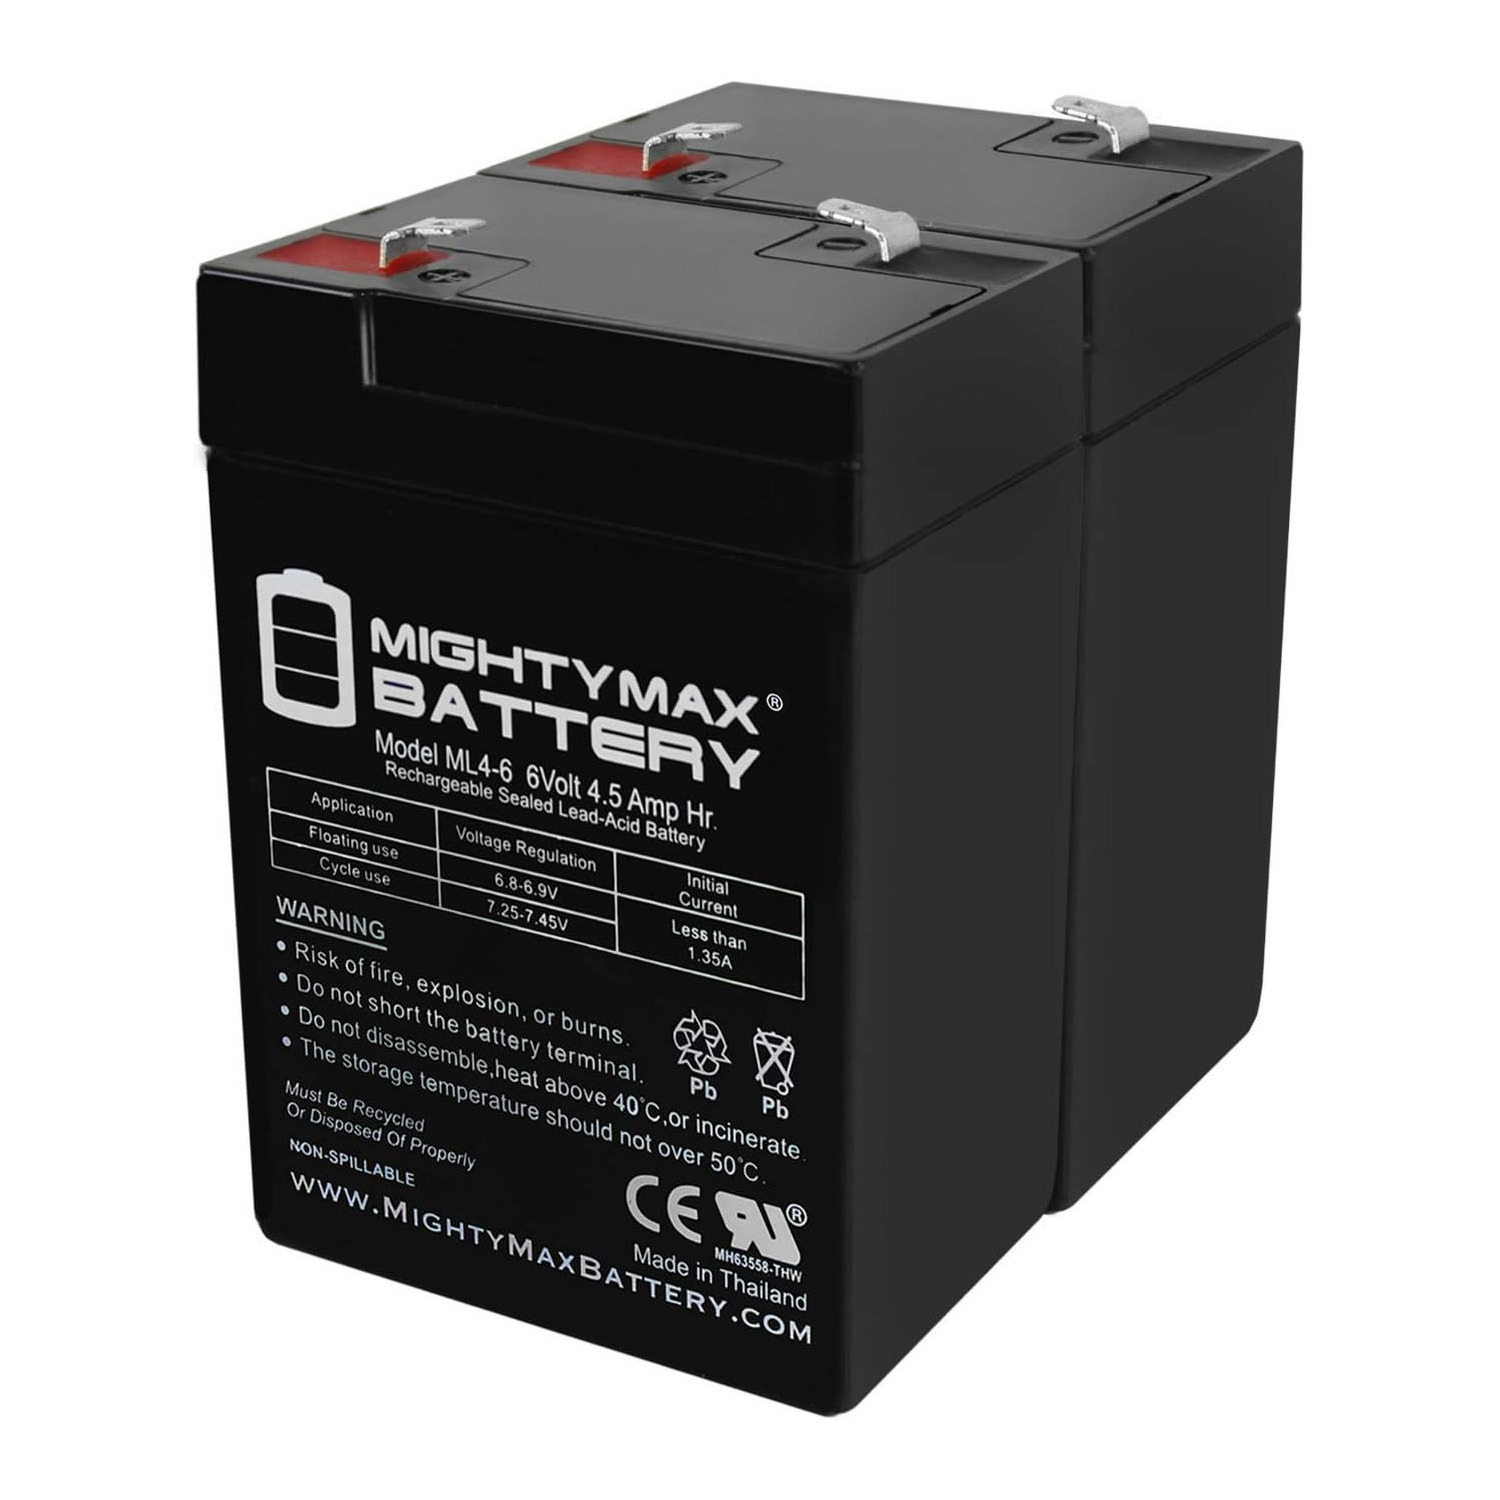 6V 4.5AH SLA Replacement Battery for Exit Light EL-RG6 - 2 Pack